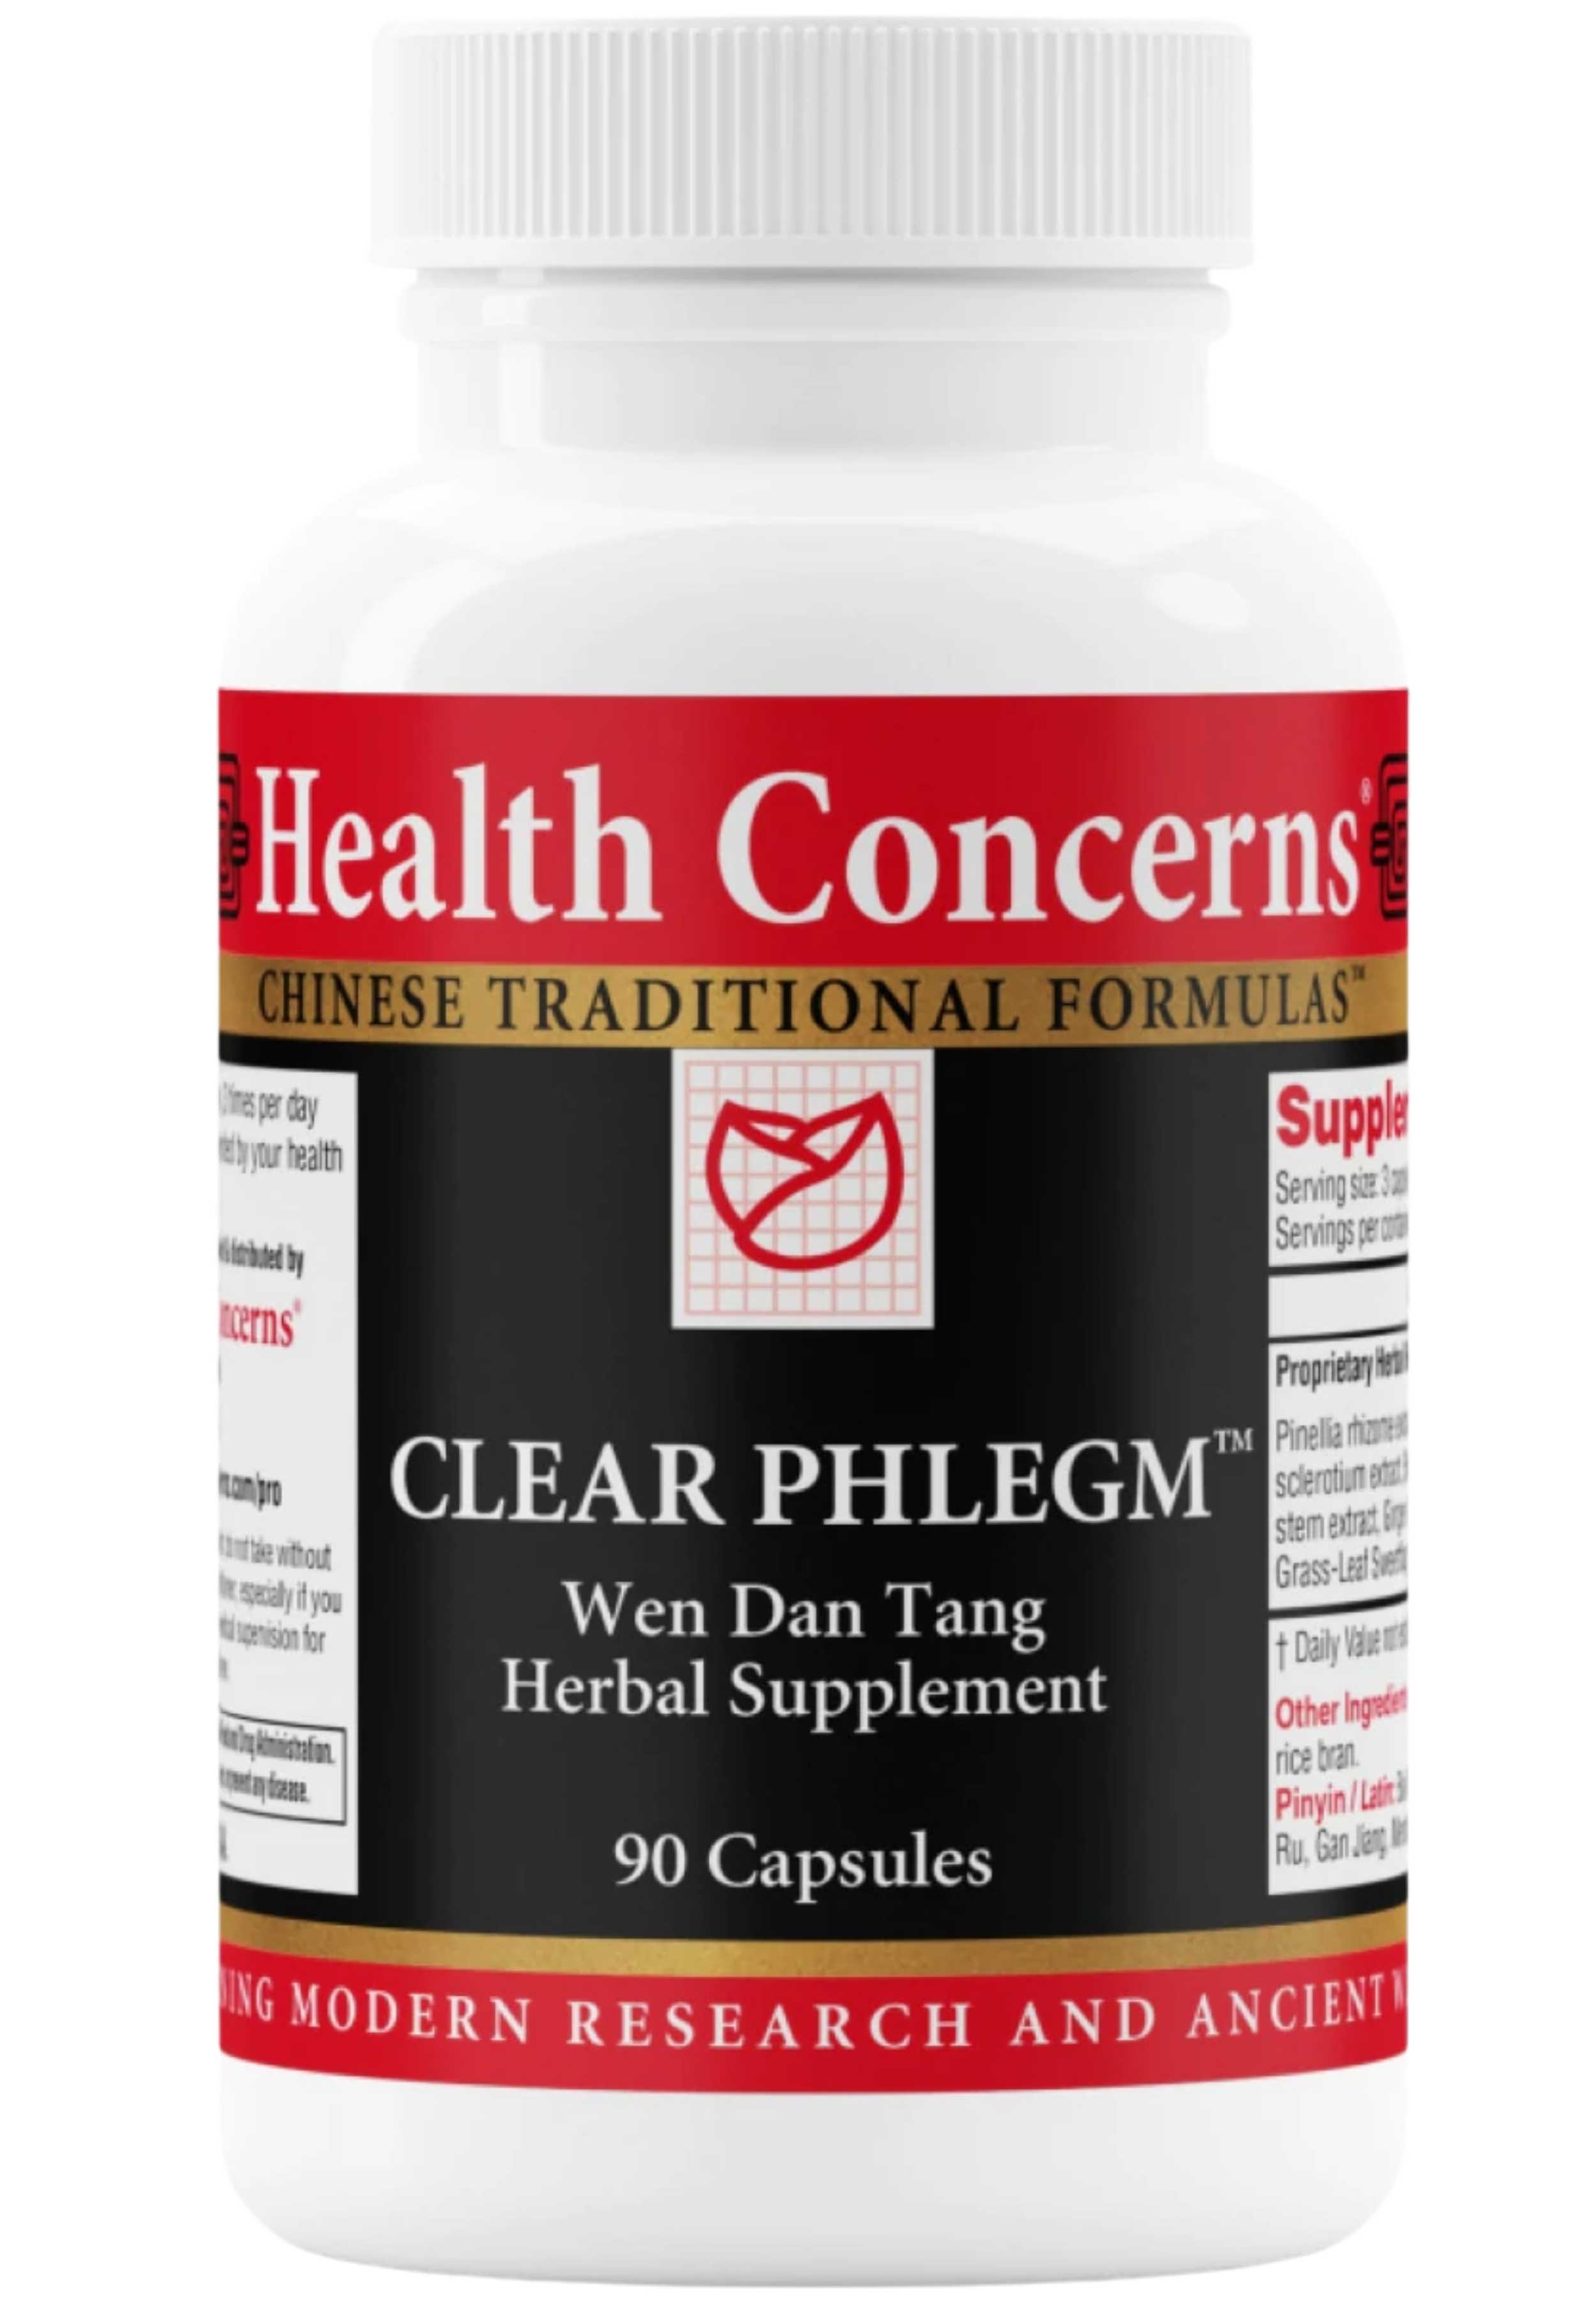 Health Concerns Clear Phlegm